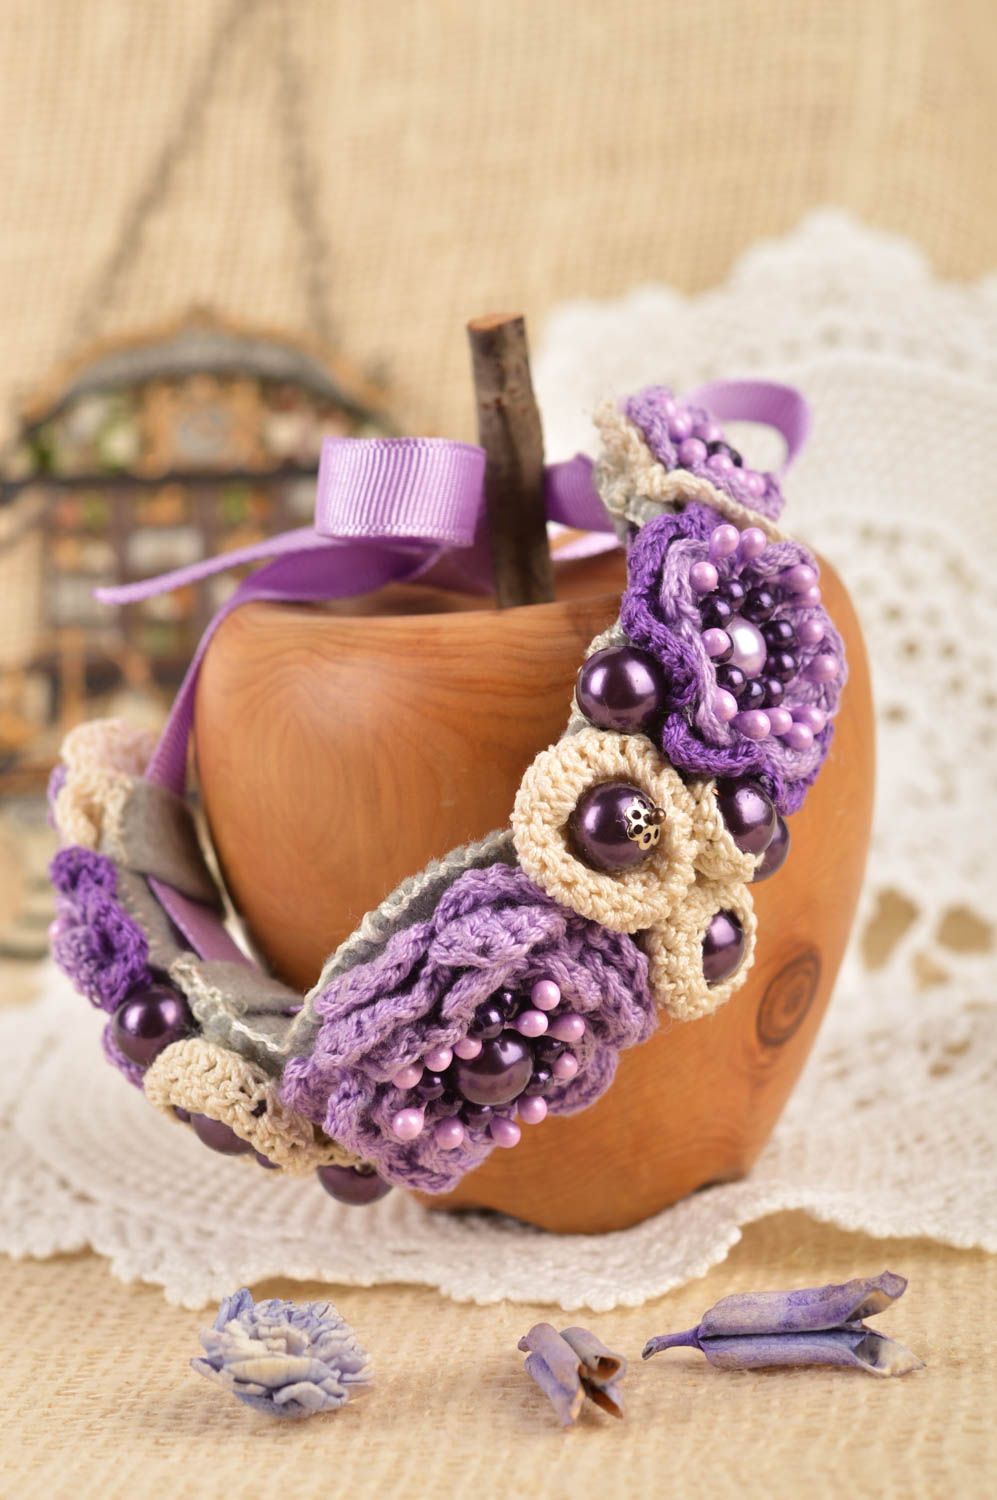 Unusual handmade wrist bracelet designs flower bracelet crochet ideas gift ideas photo 1